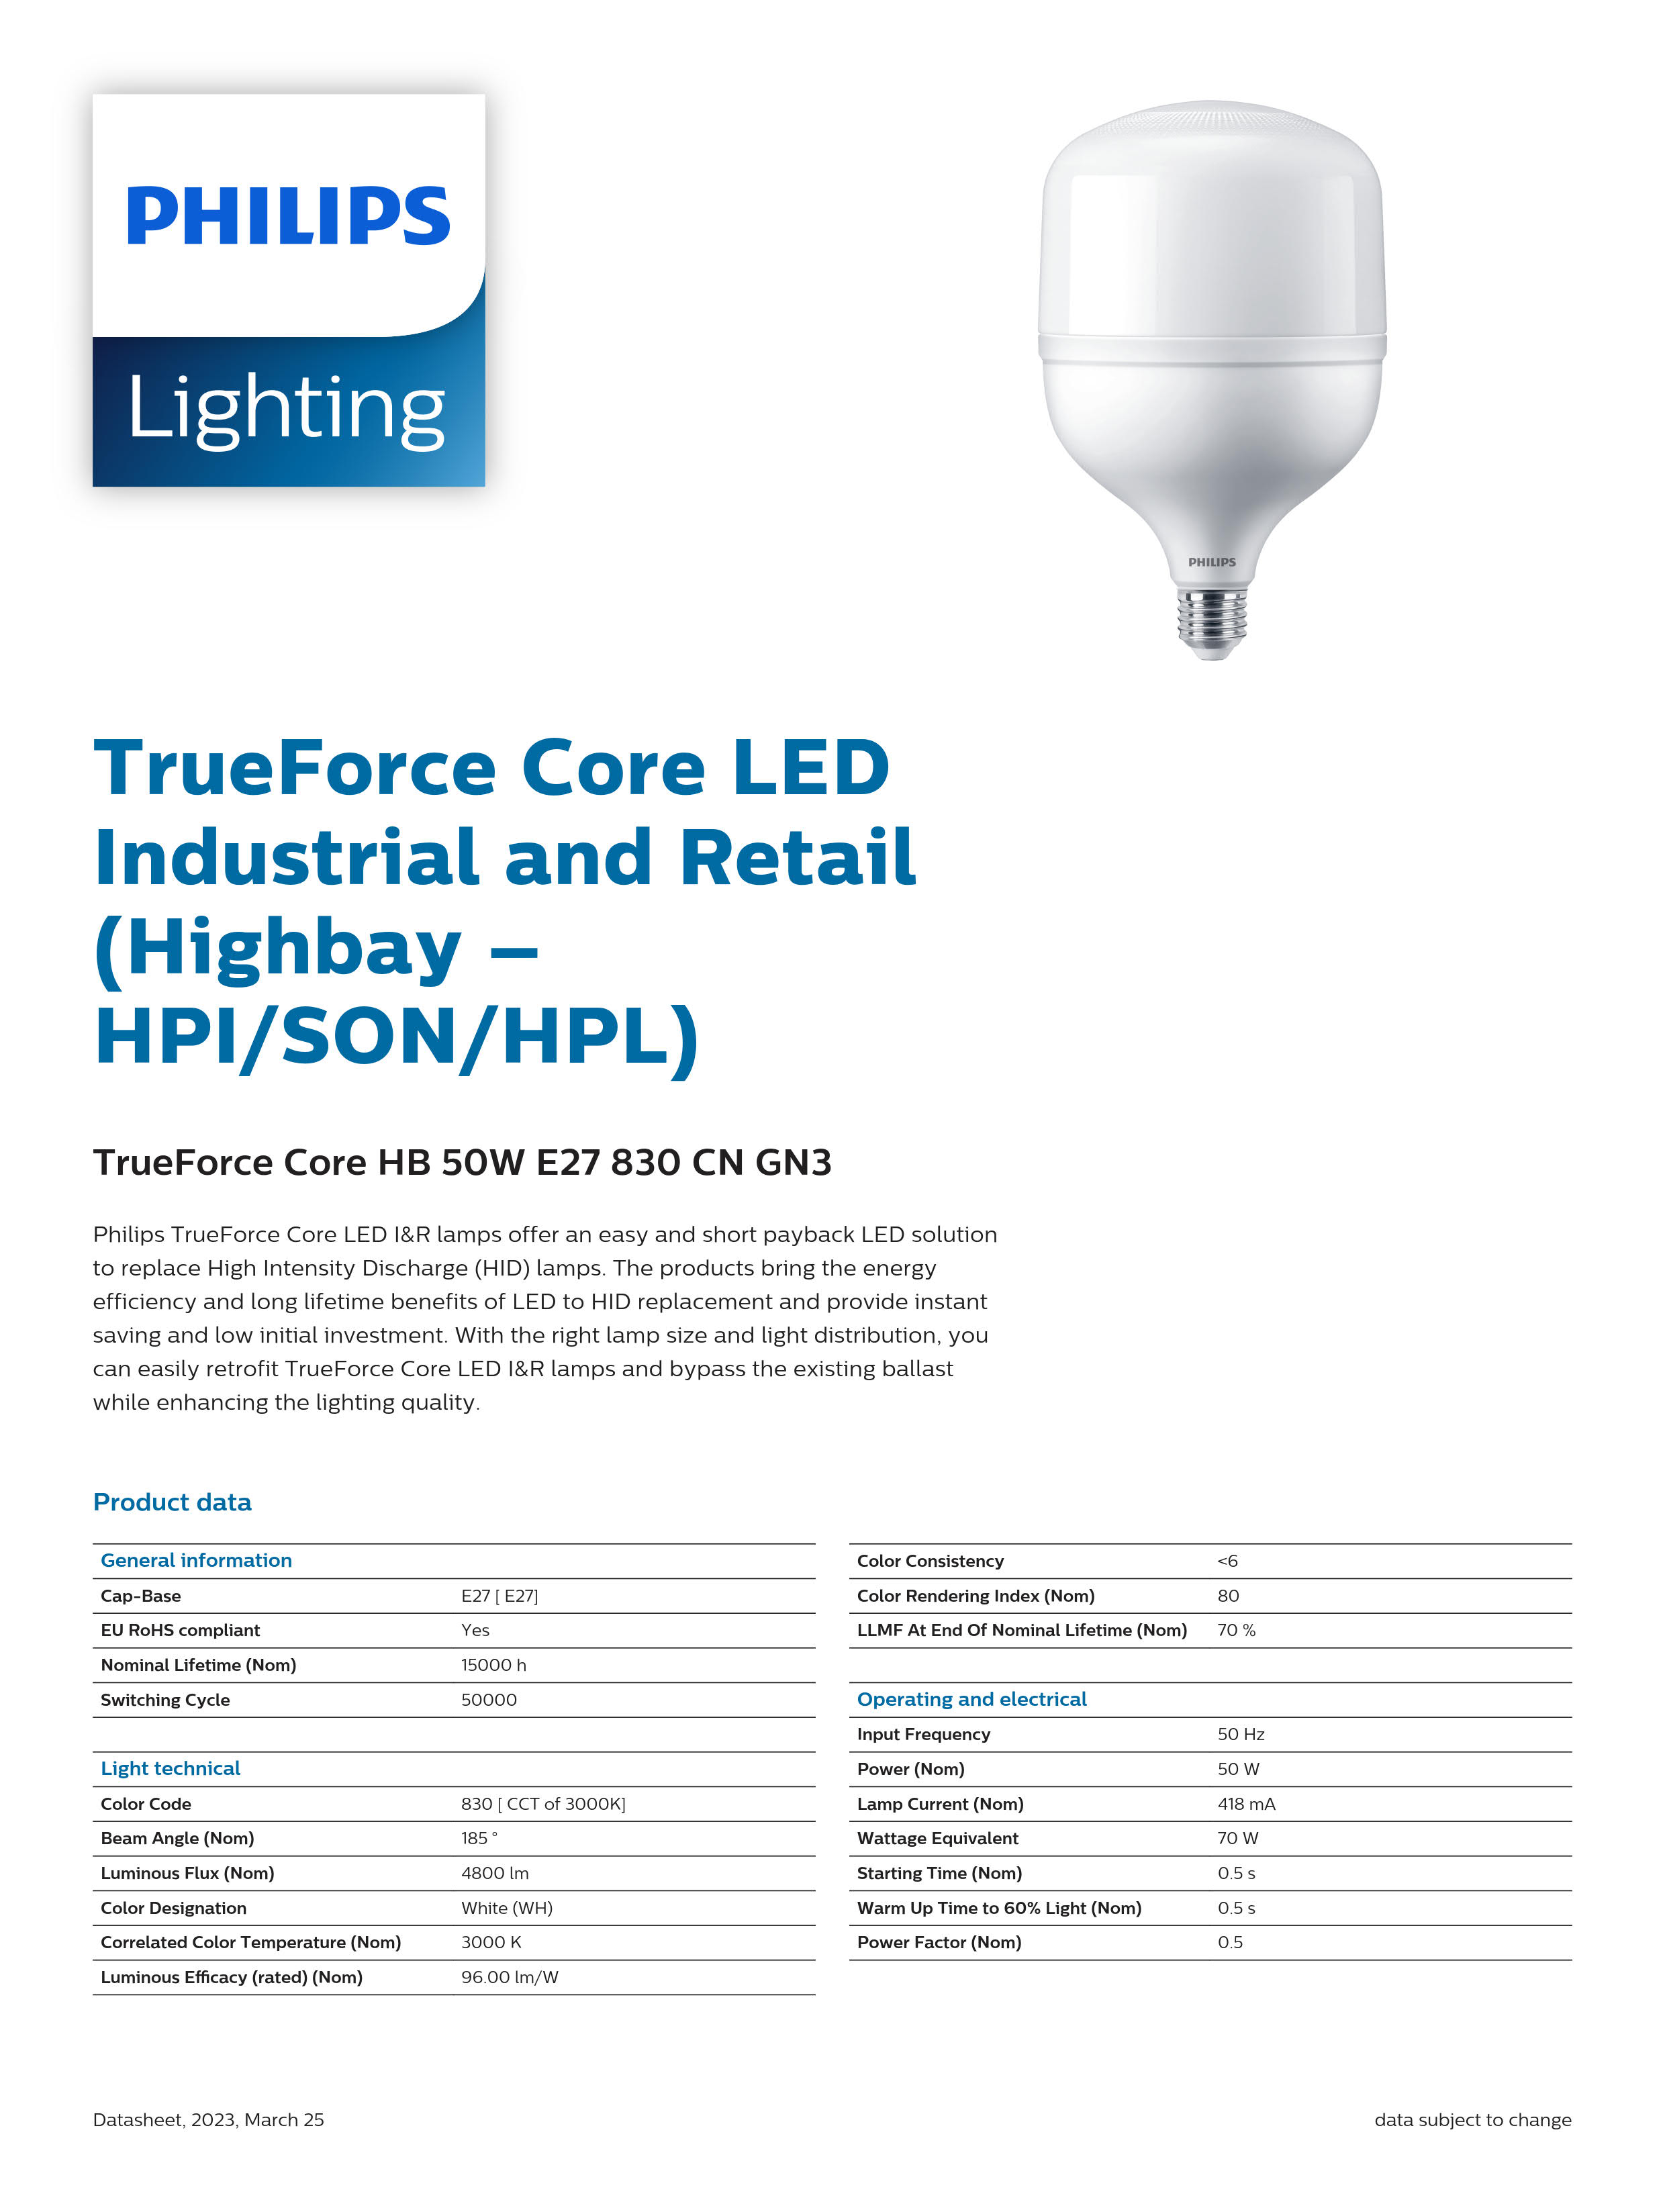 PHILIPS LED Bulb TrueForce Core HB 50W E27 830 CN GN3 929002408710